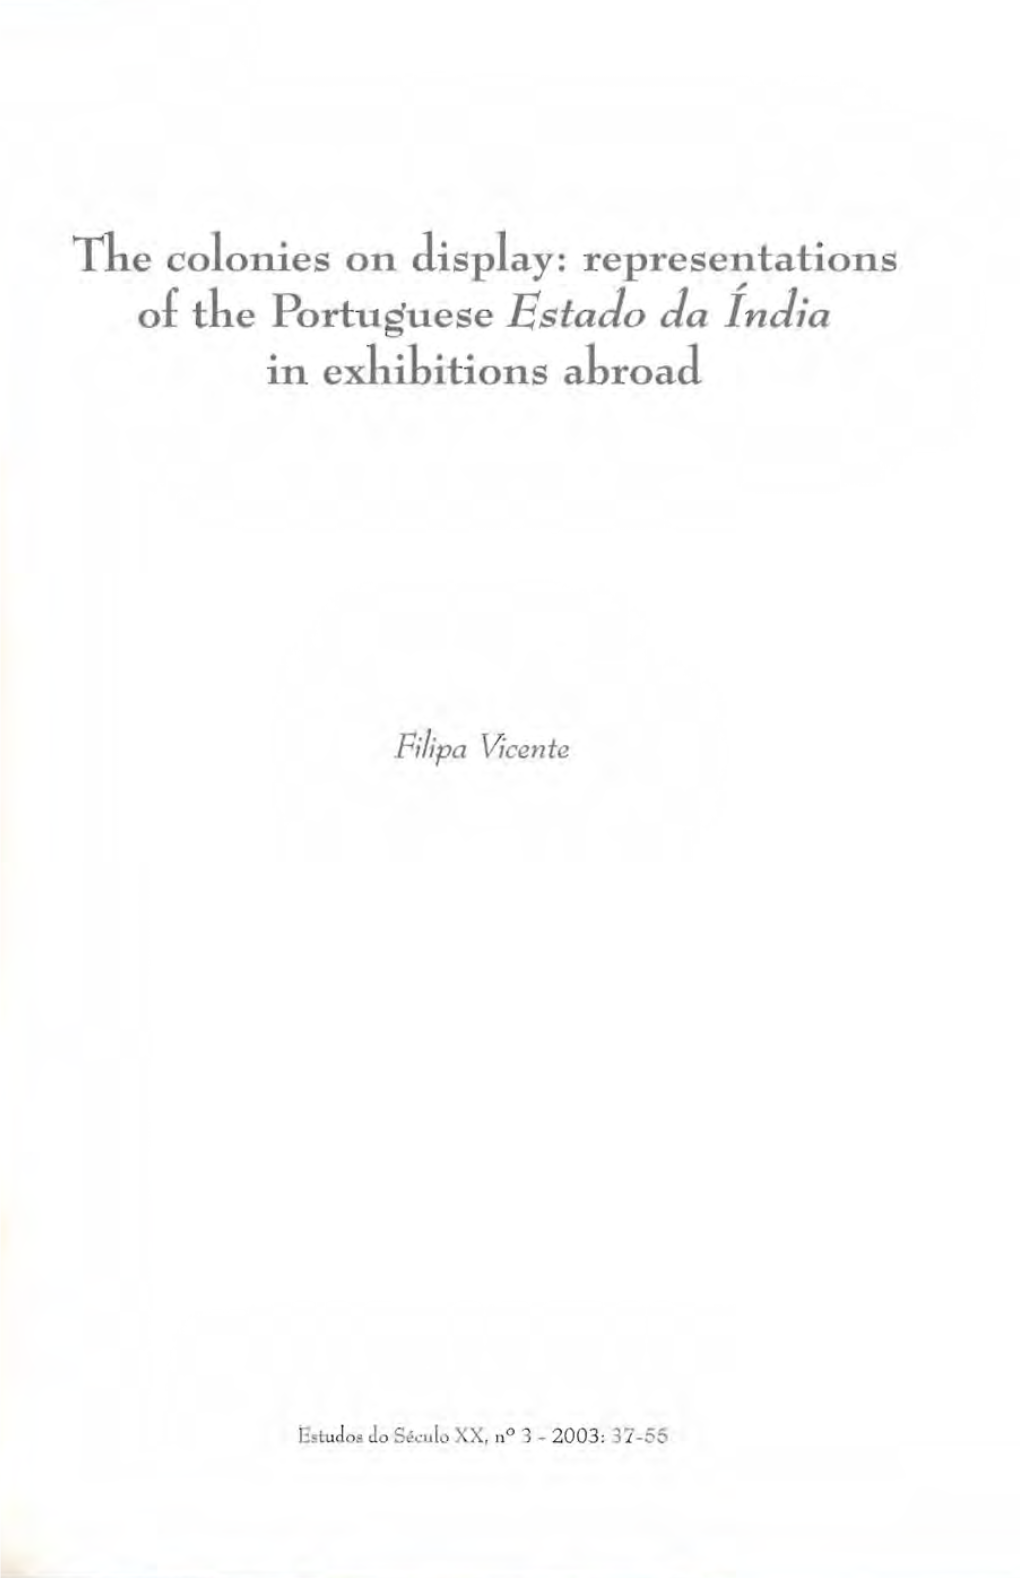 Representations of the Portuguese Estado Da India in Exhibitions Abroad